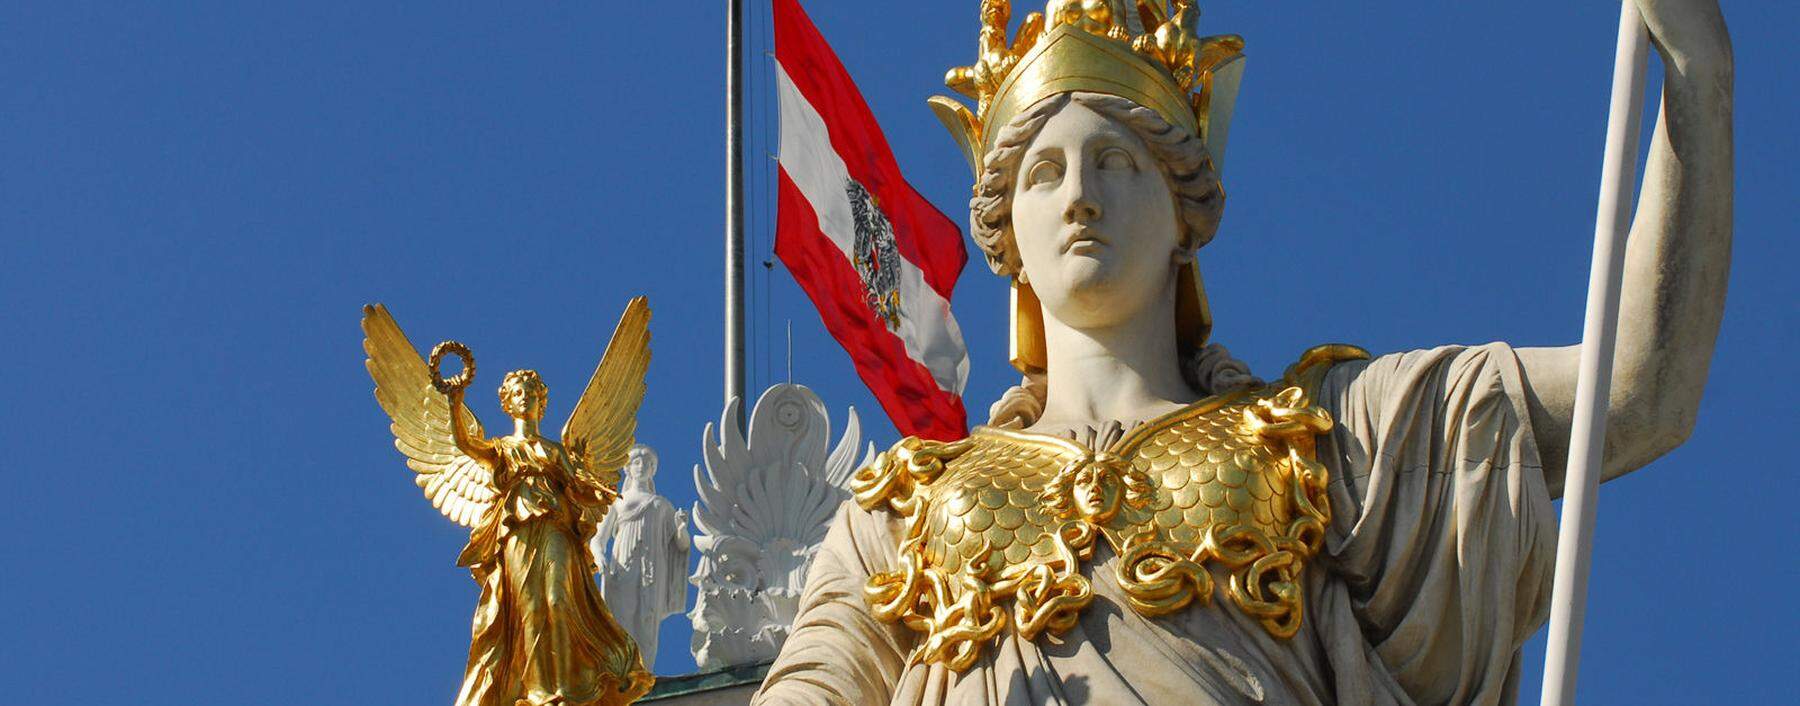 Wir-Bewusstsein und nationale Identität der Österreicher. Im Bild Symbole der Republik.